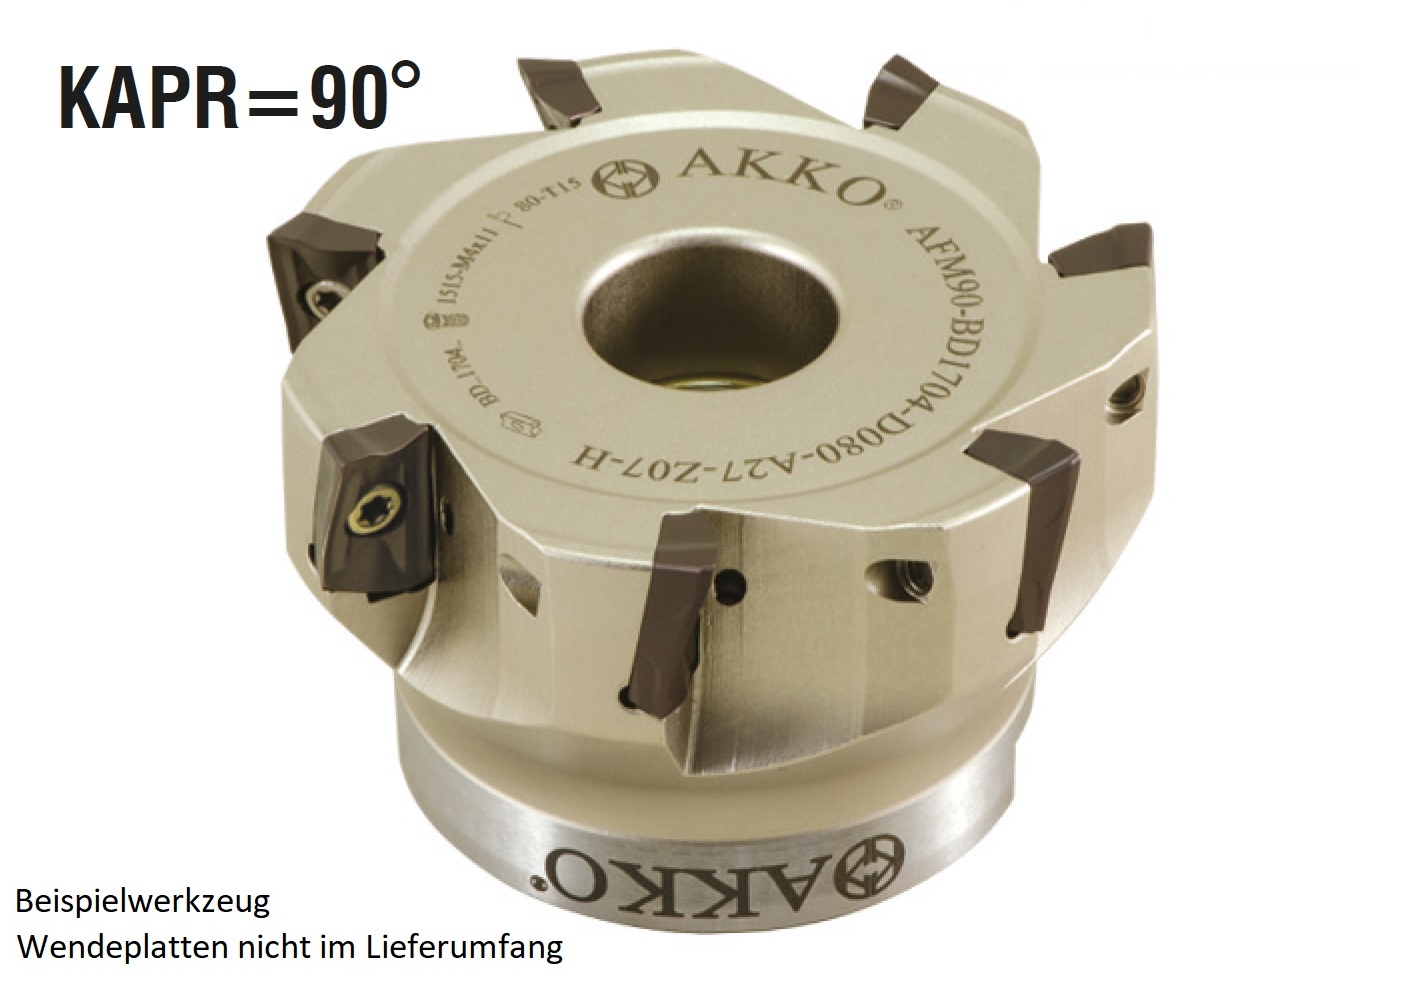 AKKO-Eckmesserkopf ø 50 mm, 90° Anstellwinkel, kompatibel mit Kyocera BDMT 1704..
Schaft-Ausführung ø 22 mm (Typ A), mit Innenkühlung, Z=5